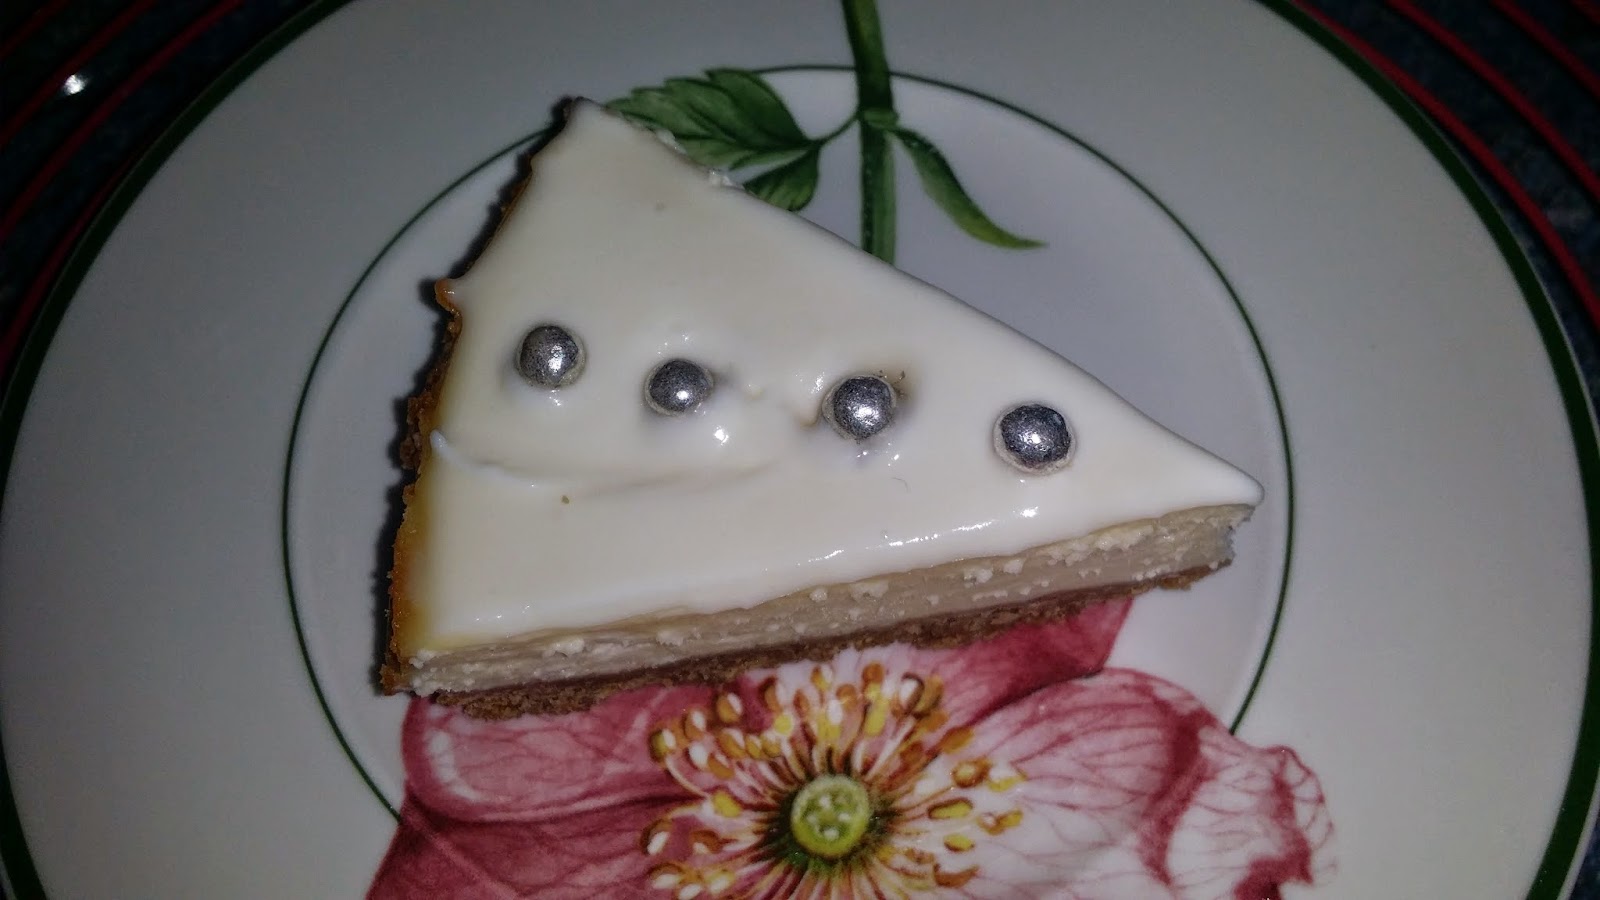 Mini Cheesecake - cu crema de branza Philadelphia